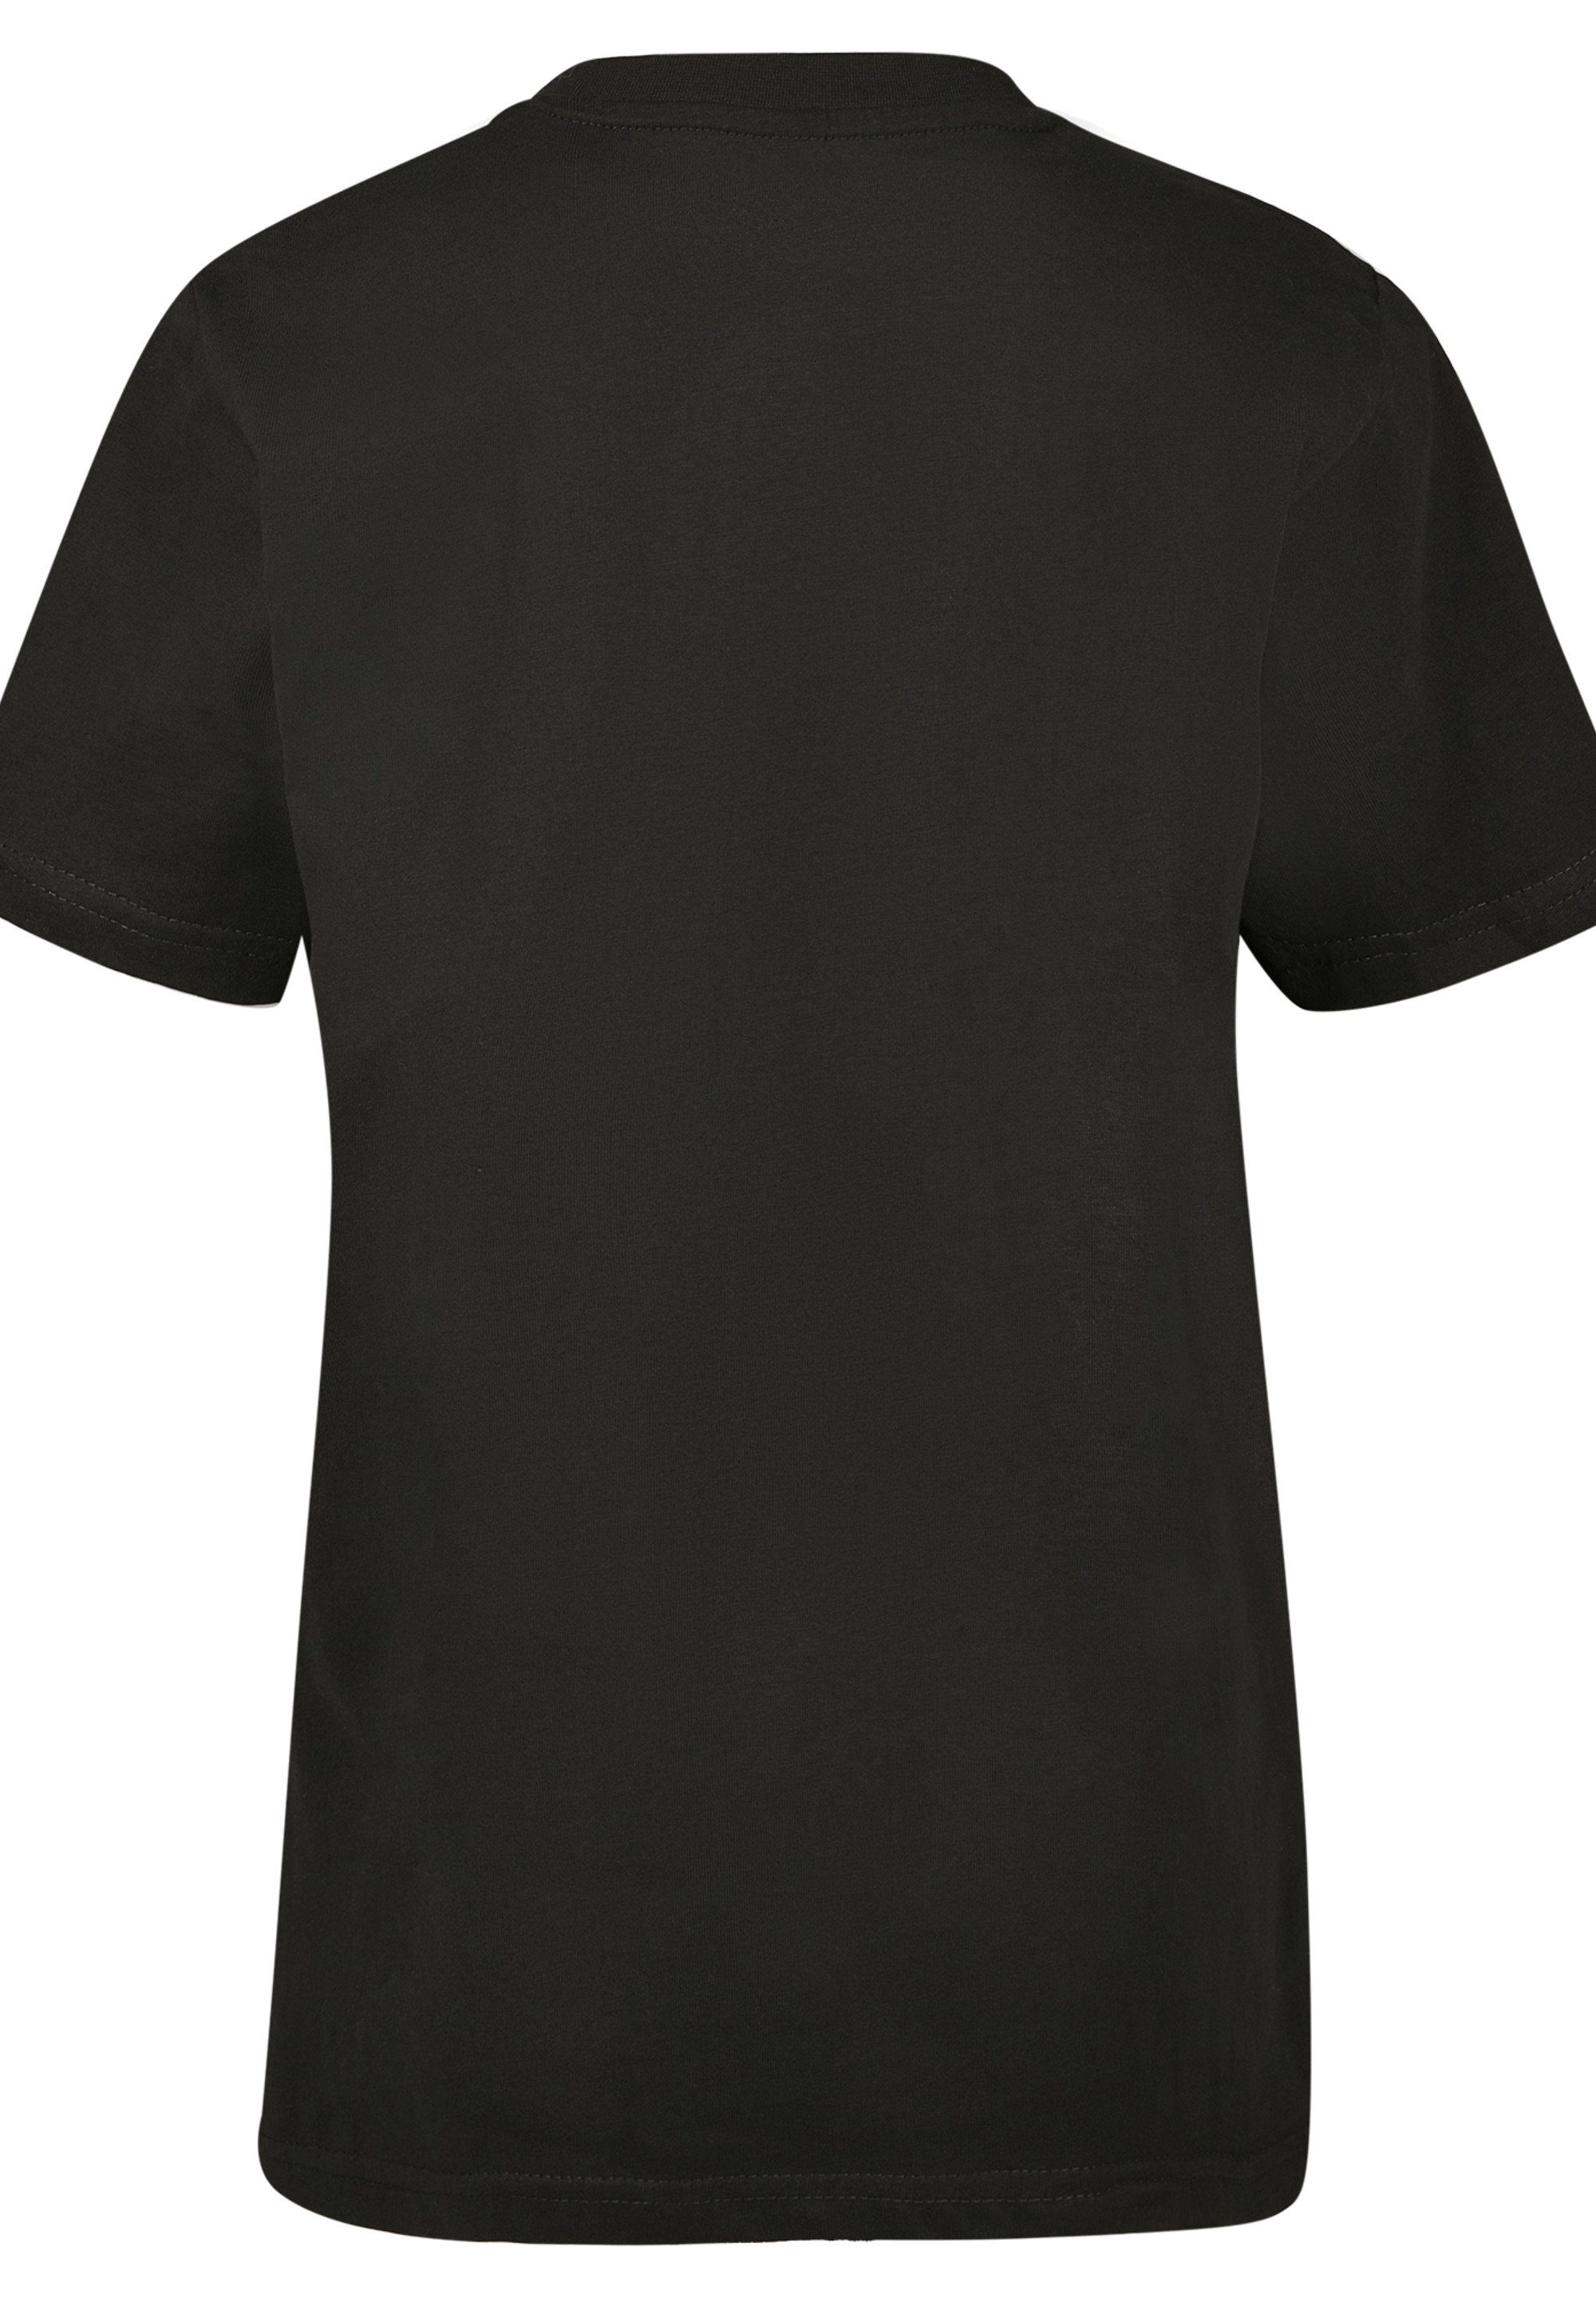 Modern Logo NASA Kinder,Premium T-Shirt Black F4NT4STIC Unisex Merch,Jungen, Mädchen,Bedruckt